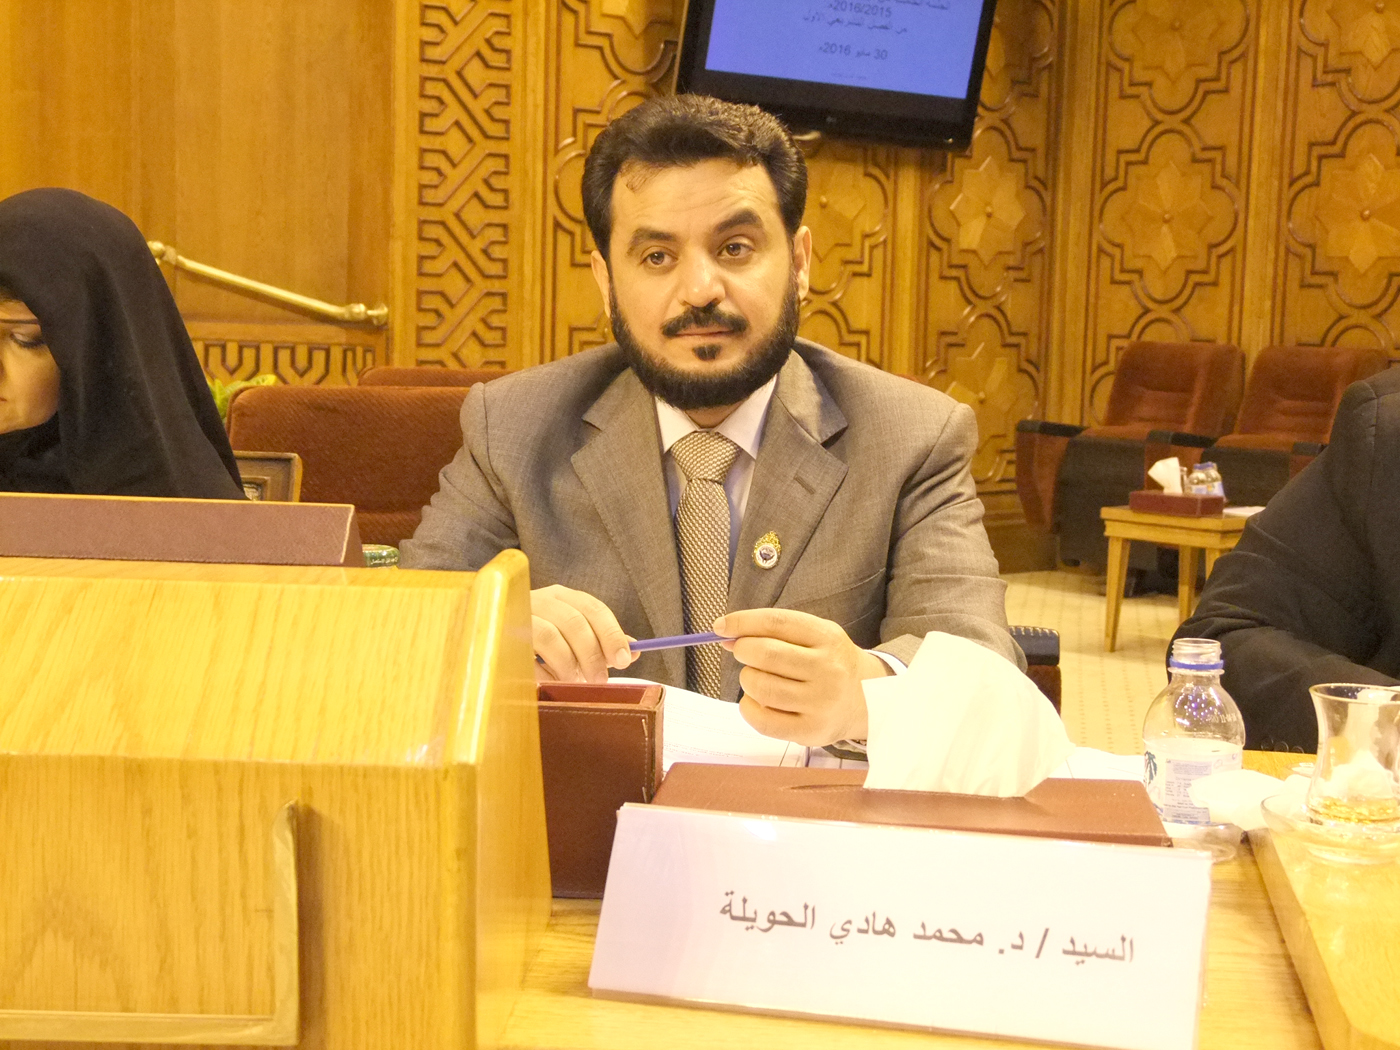 عضو البرلمان العربي النائب بمجلس الأمة الكويتي الدكتور محمد هادي الحويلة